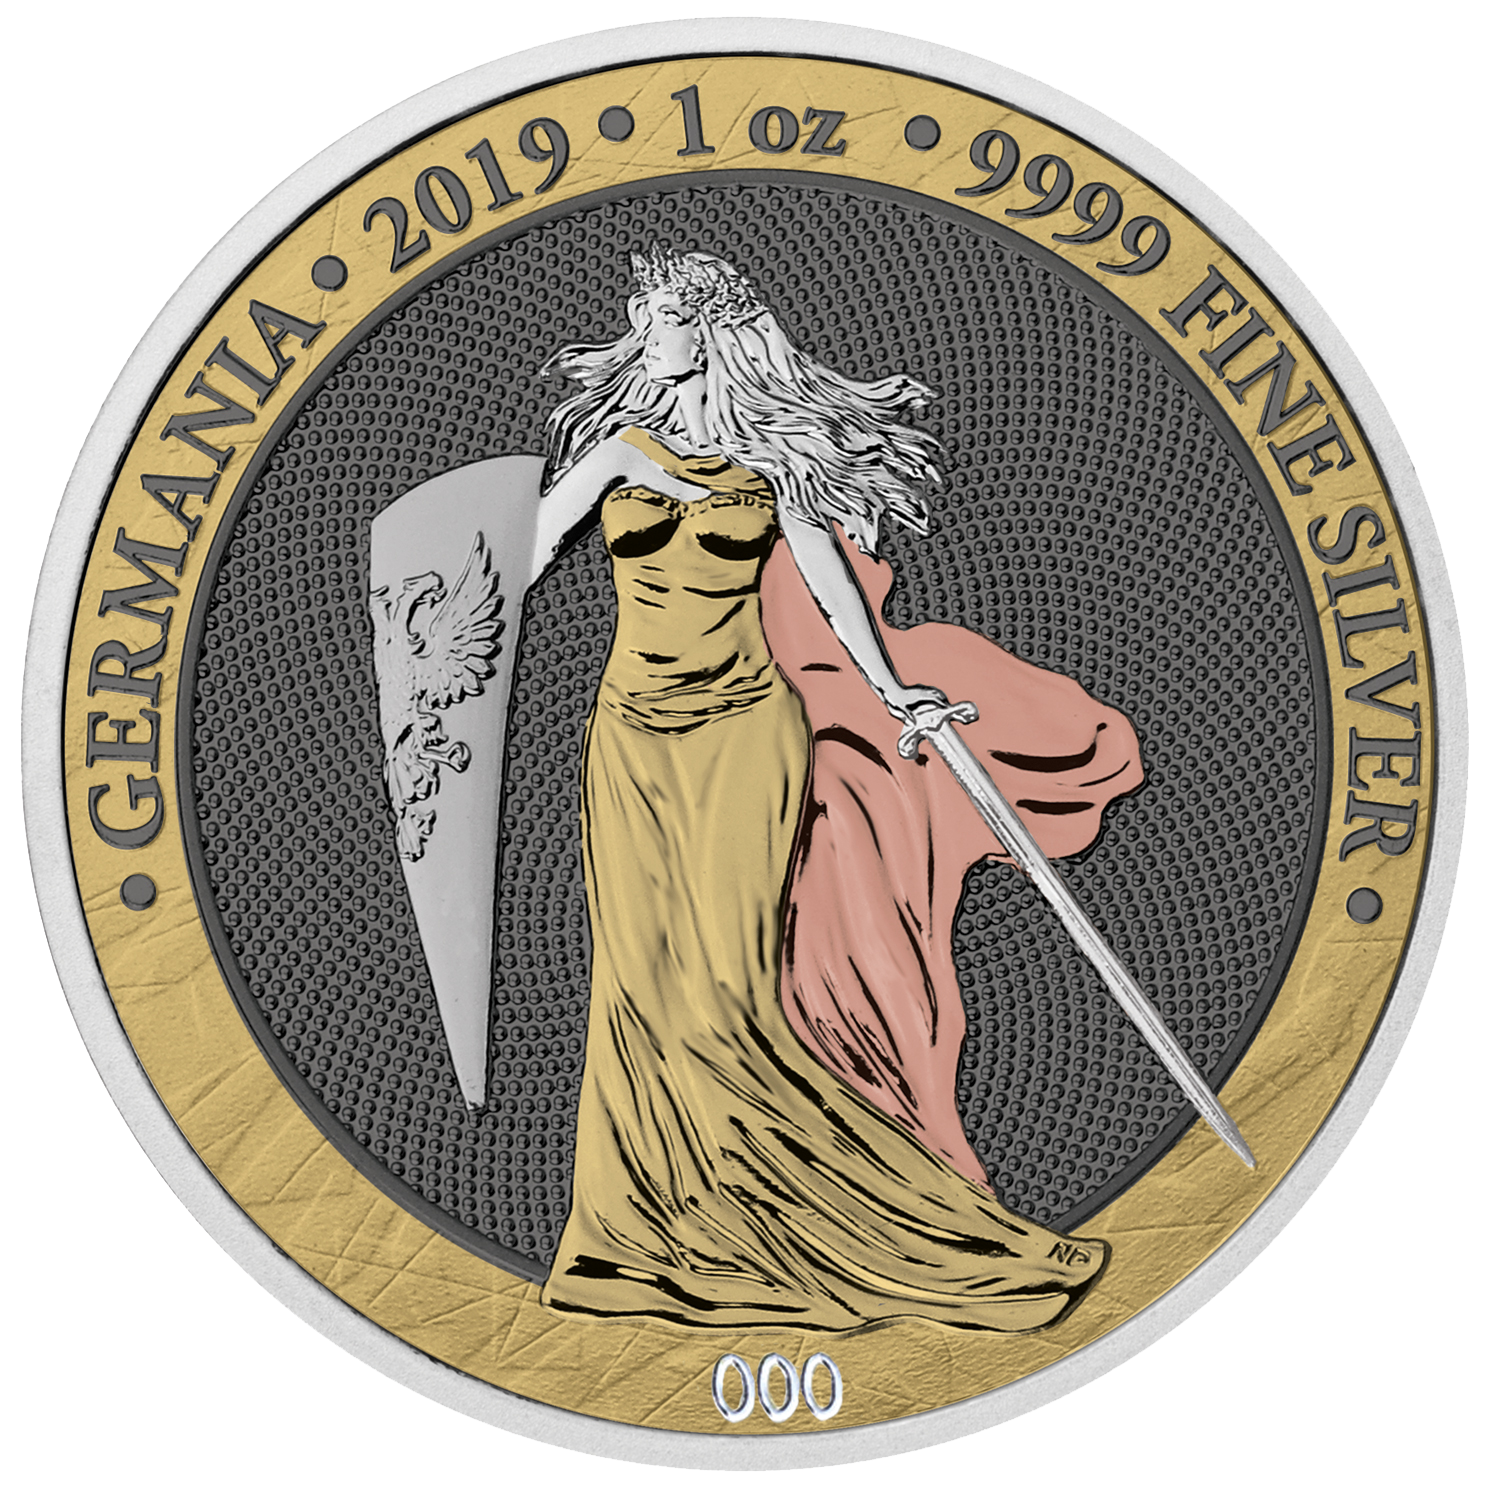 Germania 2019 silver coin Averse